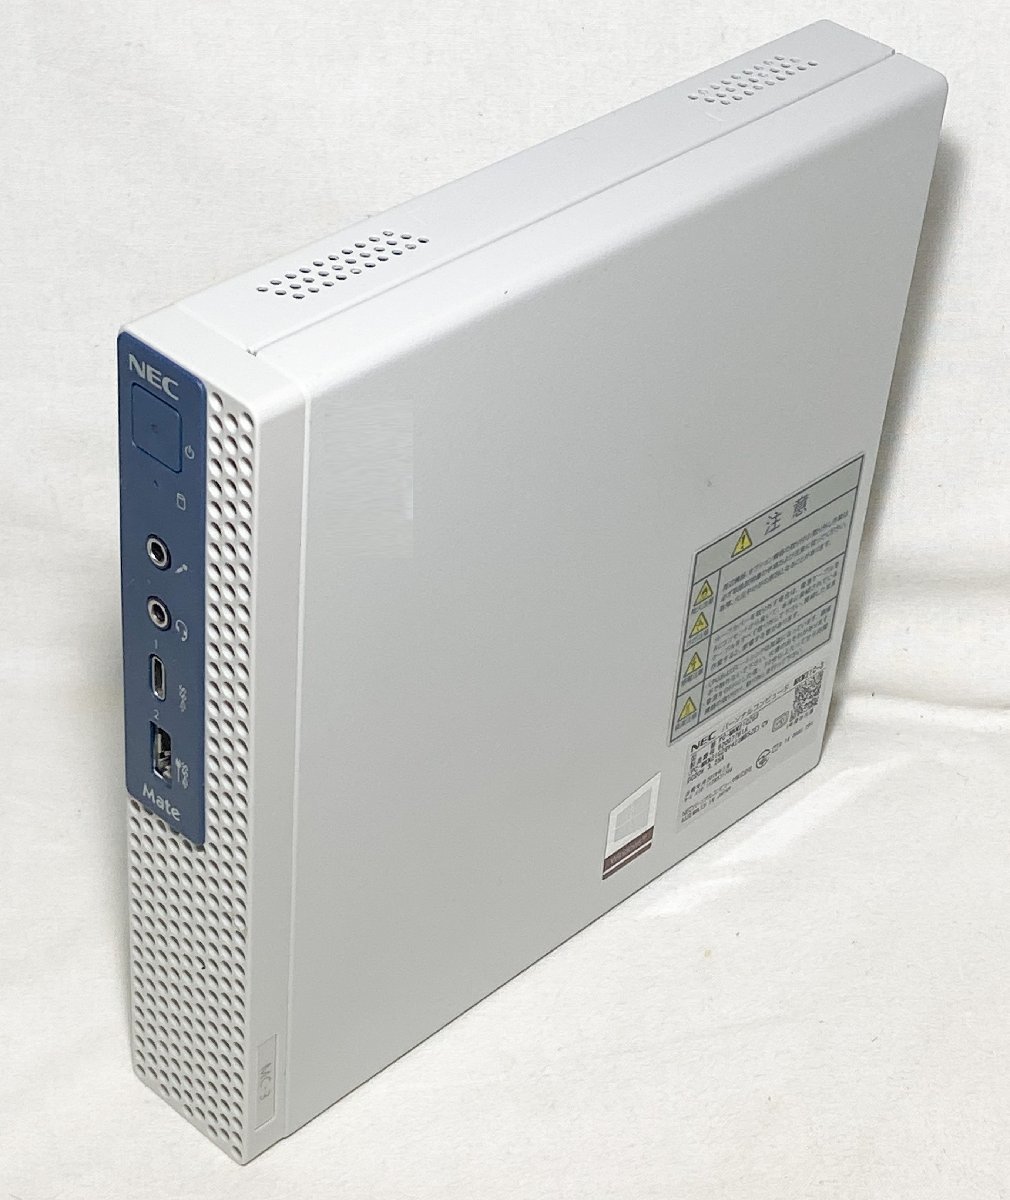 10880円 全国どこでも送料無料 NEC MATE MC-1ビジネスパソコンI3-7100T